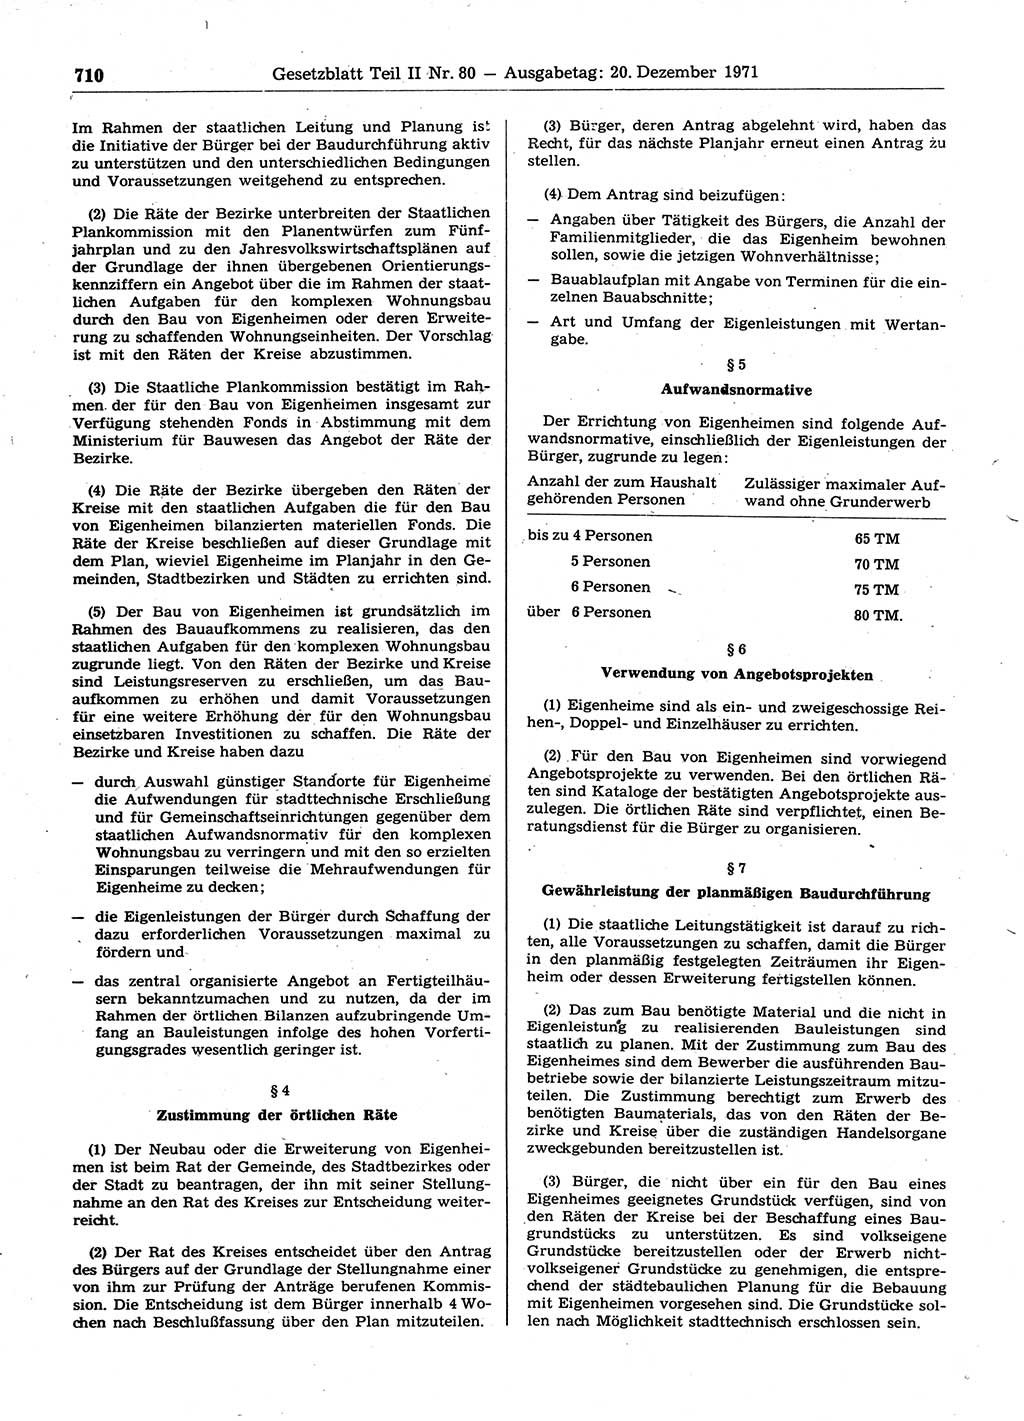 Gesetzblatt (GBl.) der Deutschen Demokratischen Republik (DDR) Teil ⅠⅠ 1971, Seite 710 (GBl. DDR ⅠⅠ 1971, S. 710)